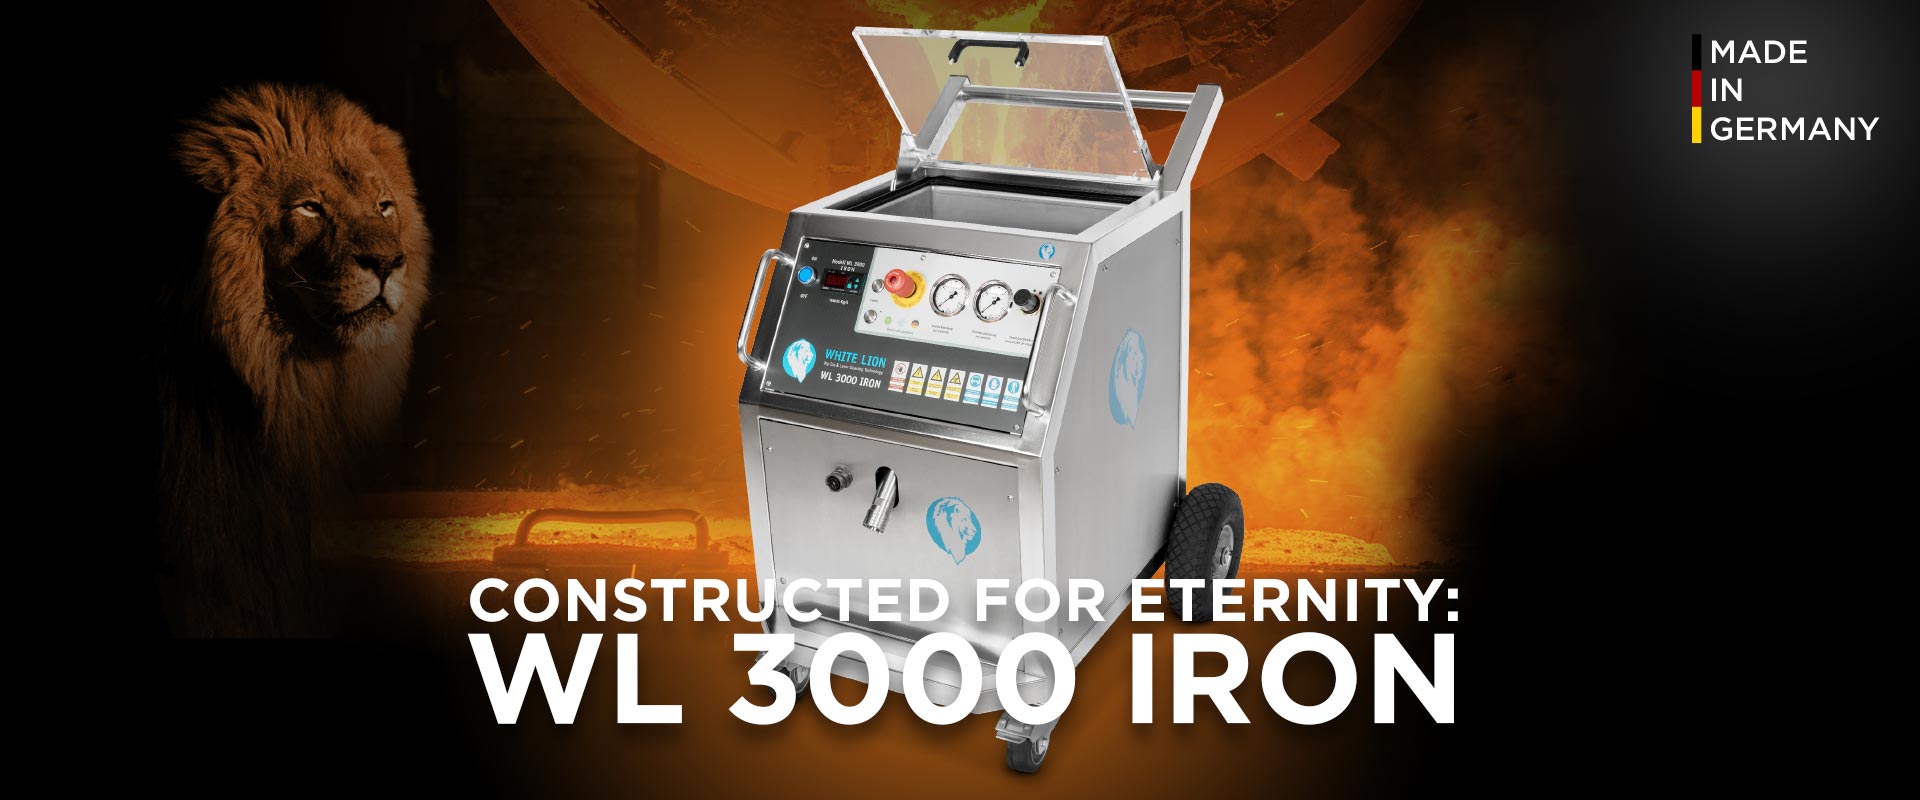 Trockeneisstrahlgerät WL 3000 Iron Startseite